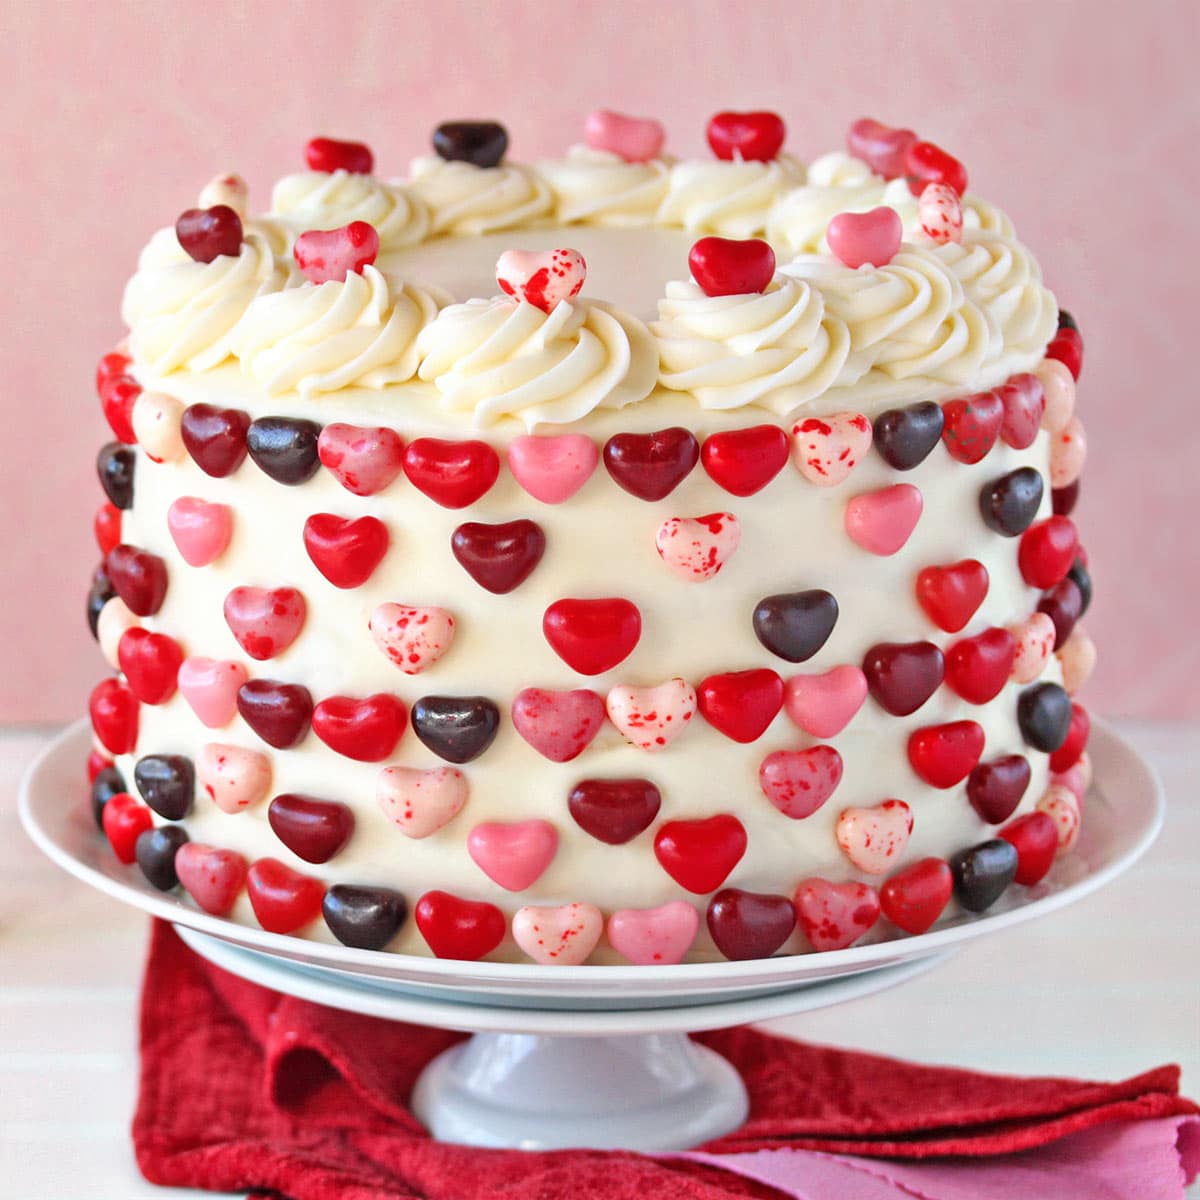 Send Red Velvet Cake for Valentine Online - VL20-95196 | Giftalove